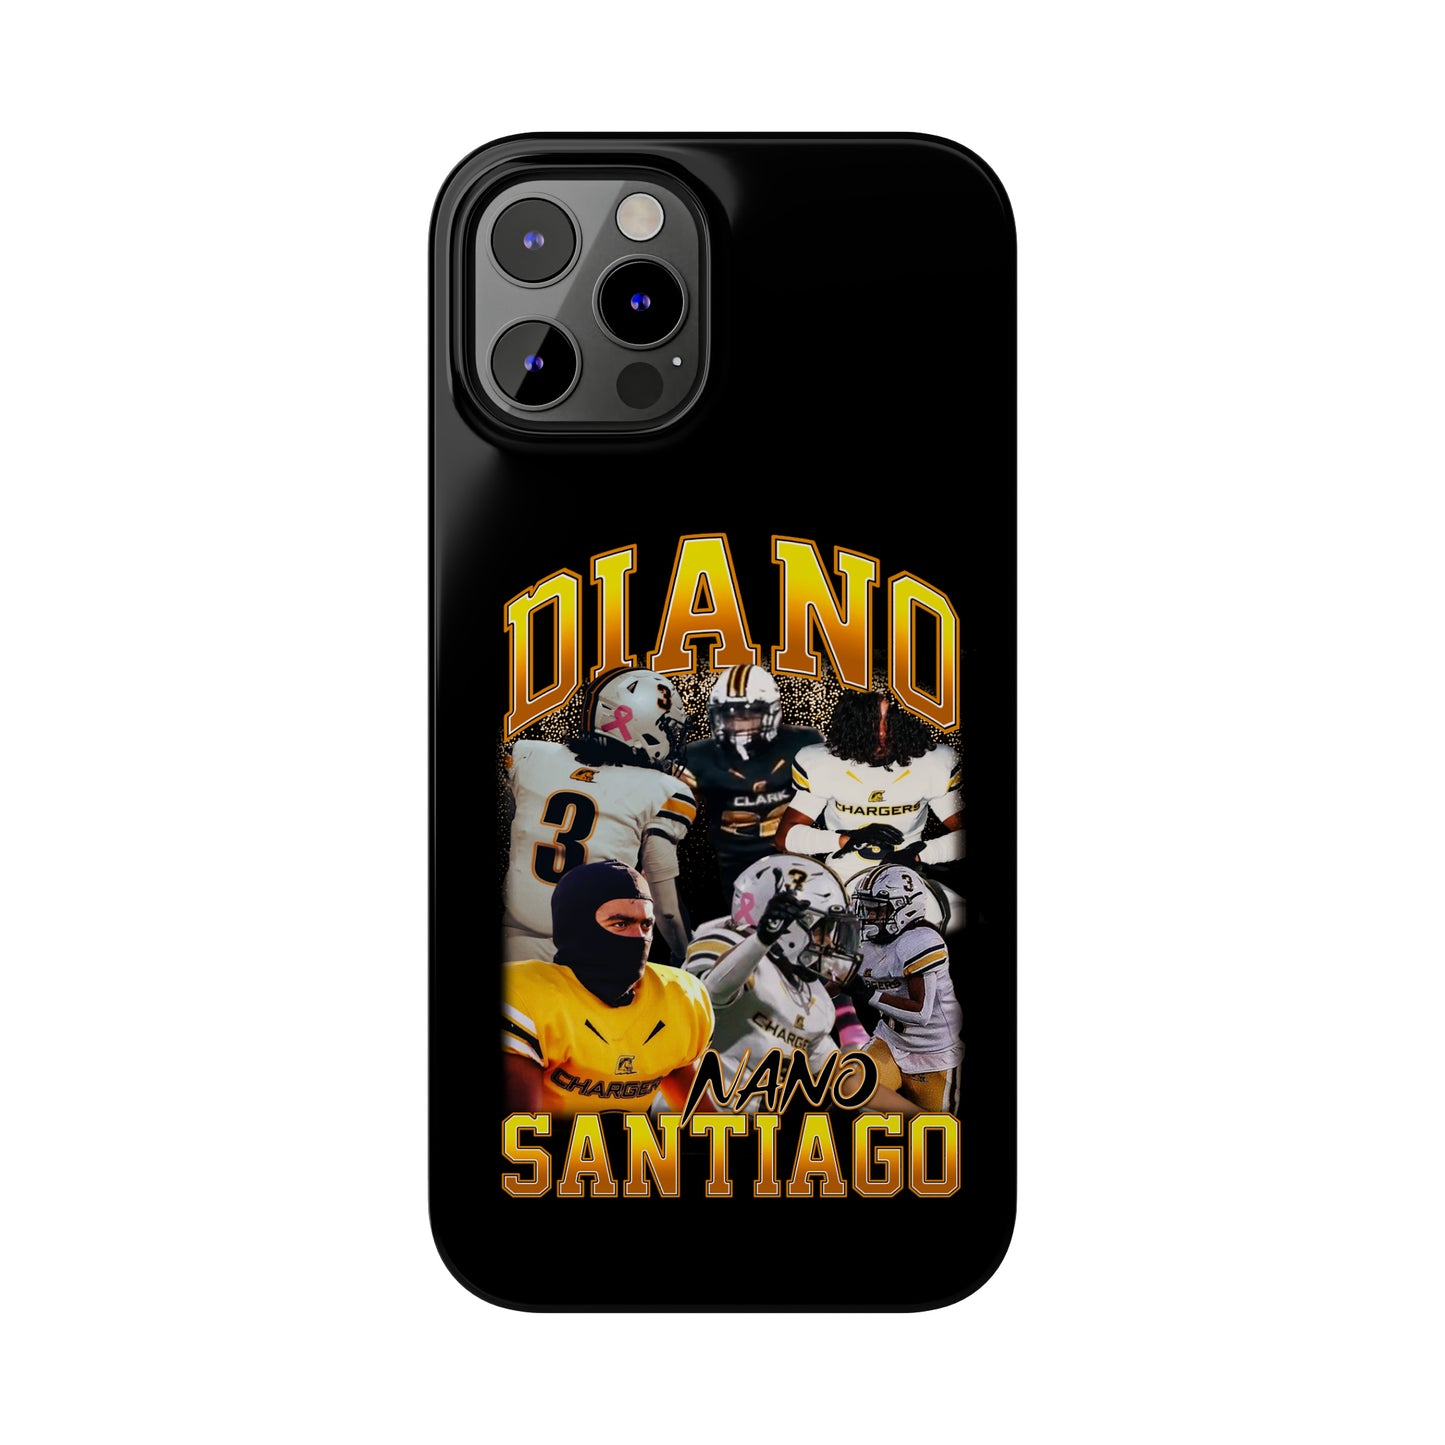 Diano Santiago Phone Case